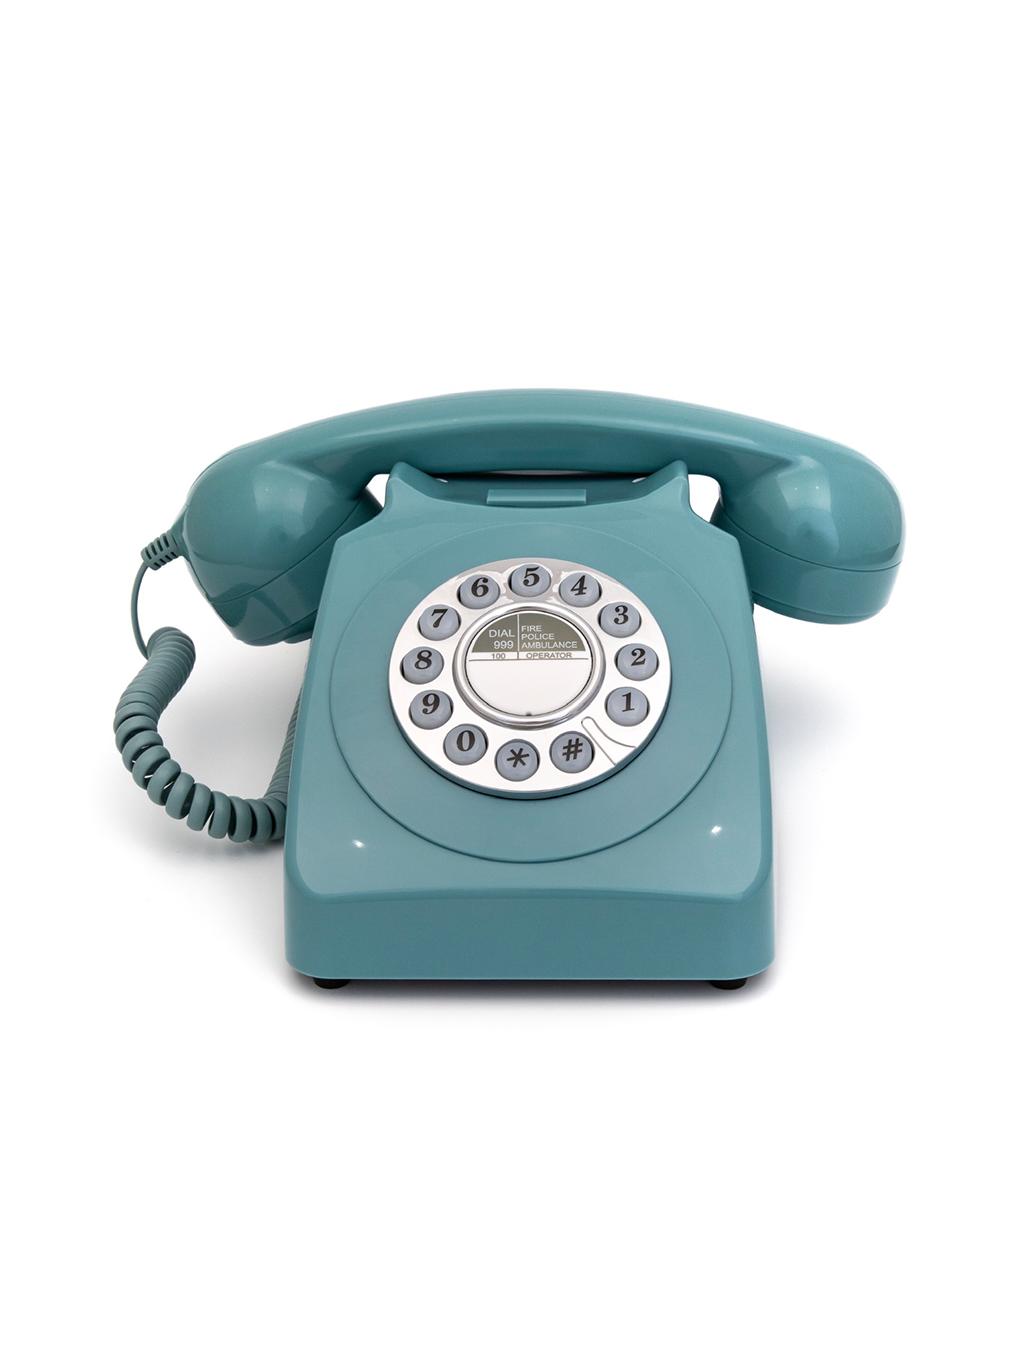 Teléfono fijo Push Button de GPO 746 (azul) – La Maravilla